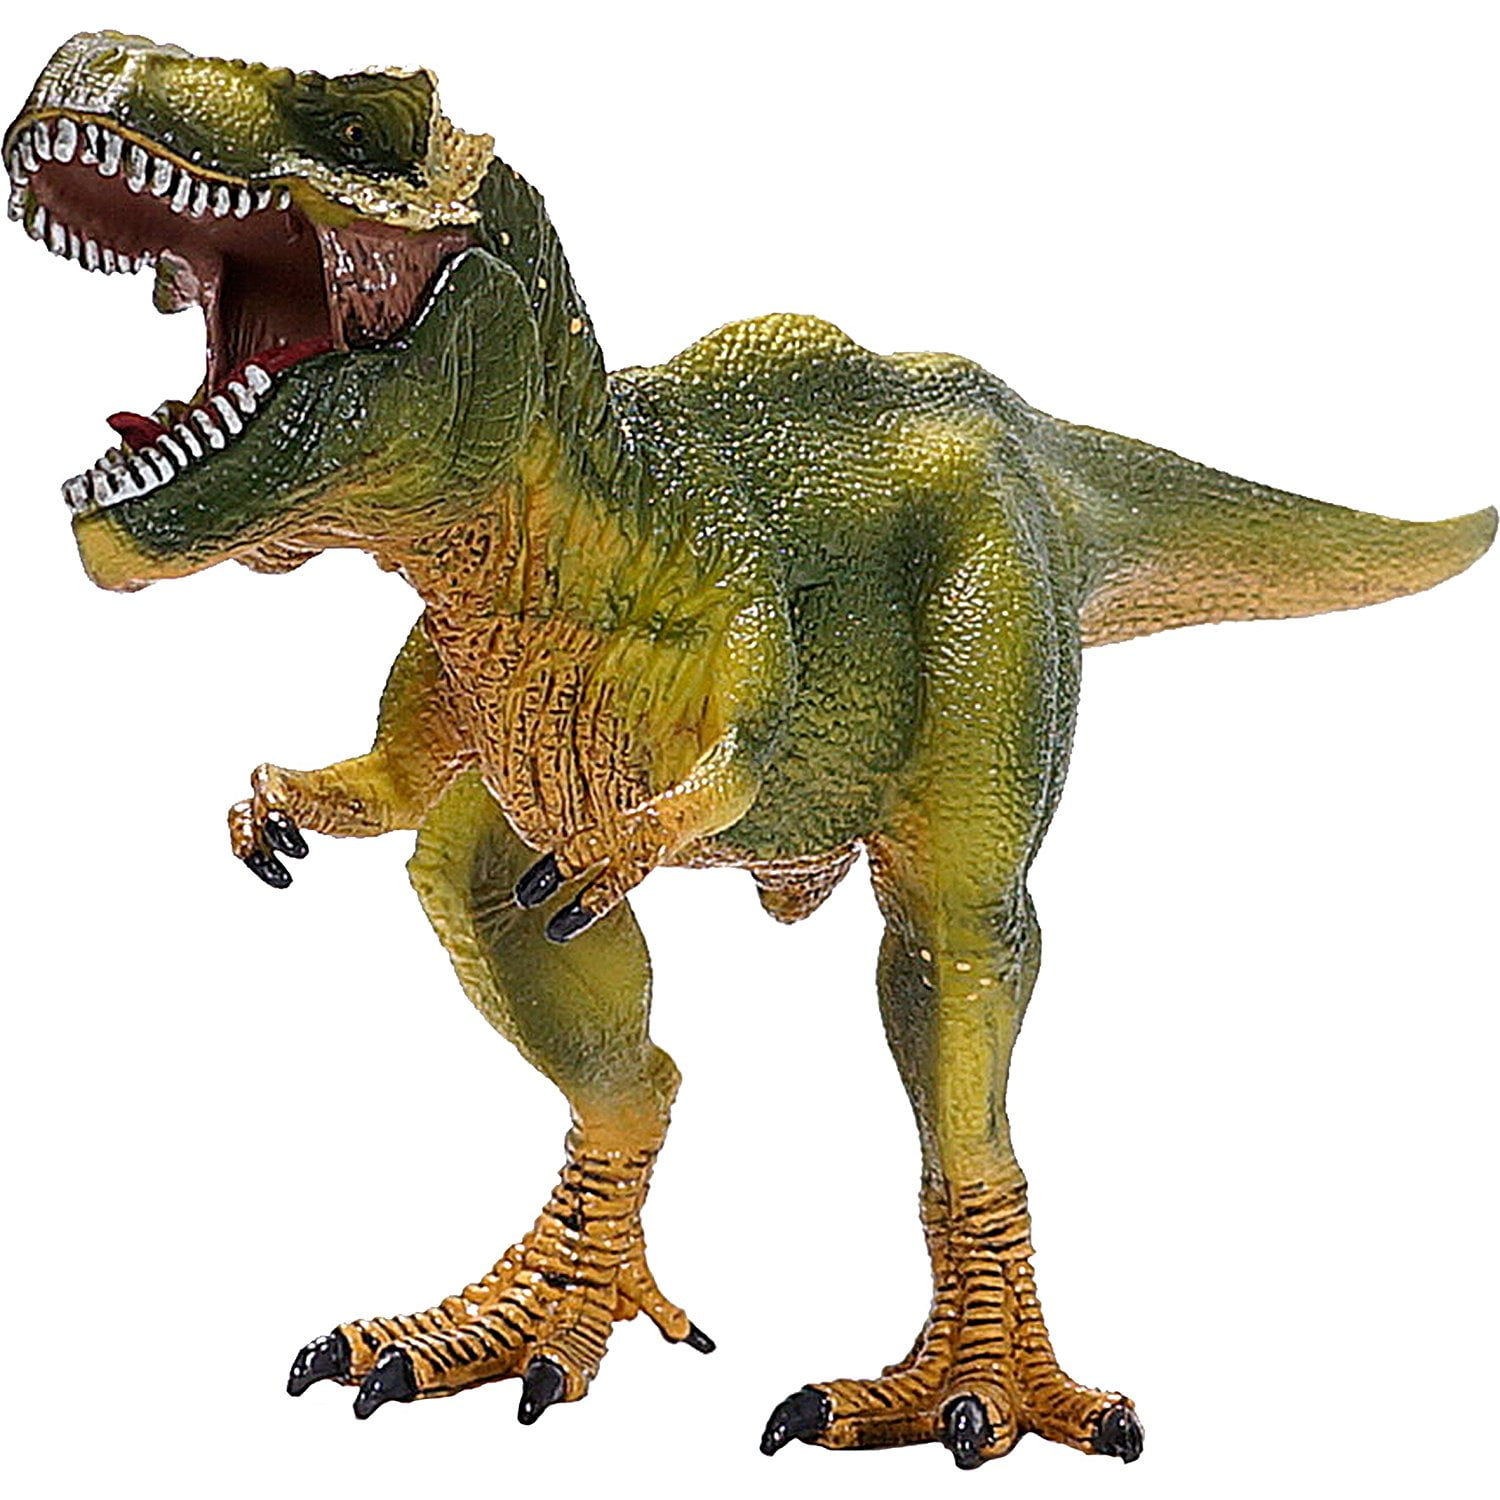 preschool dinosaur toys